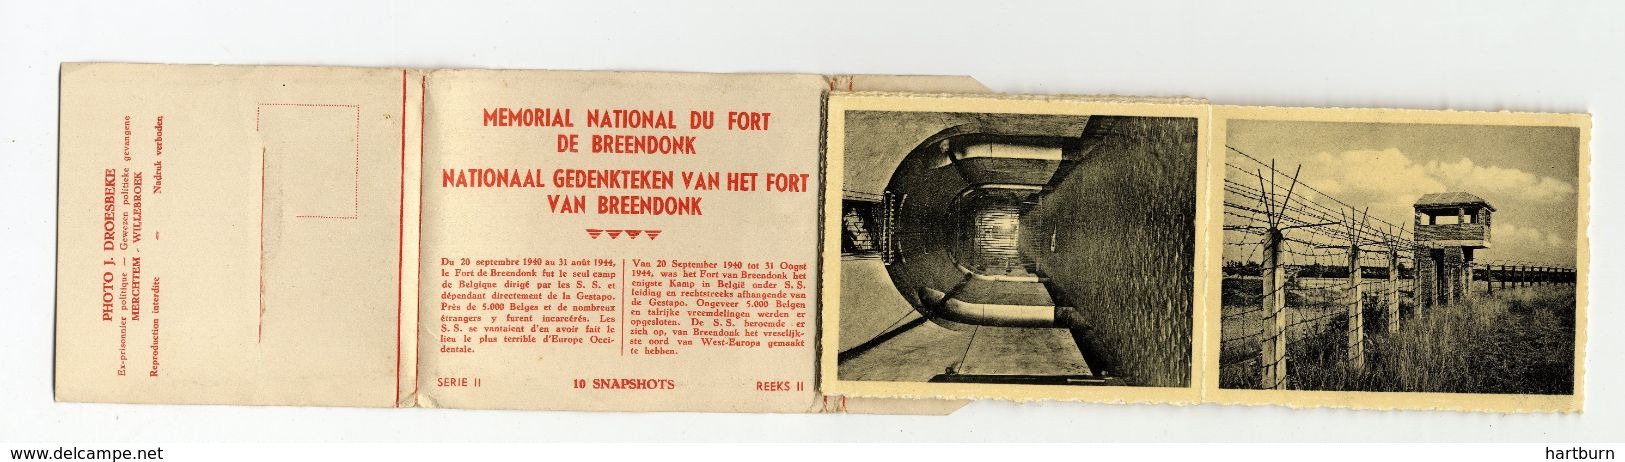 Memerial National Fort Van Breendonk. Boekje Met 10 Snapshots. Serie Twee Anvers - Antwerpen - Oorlog - Willebroek